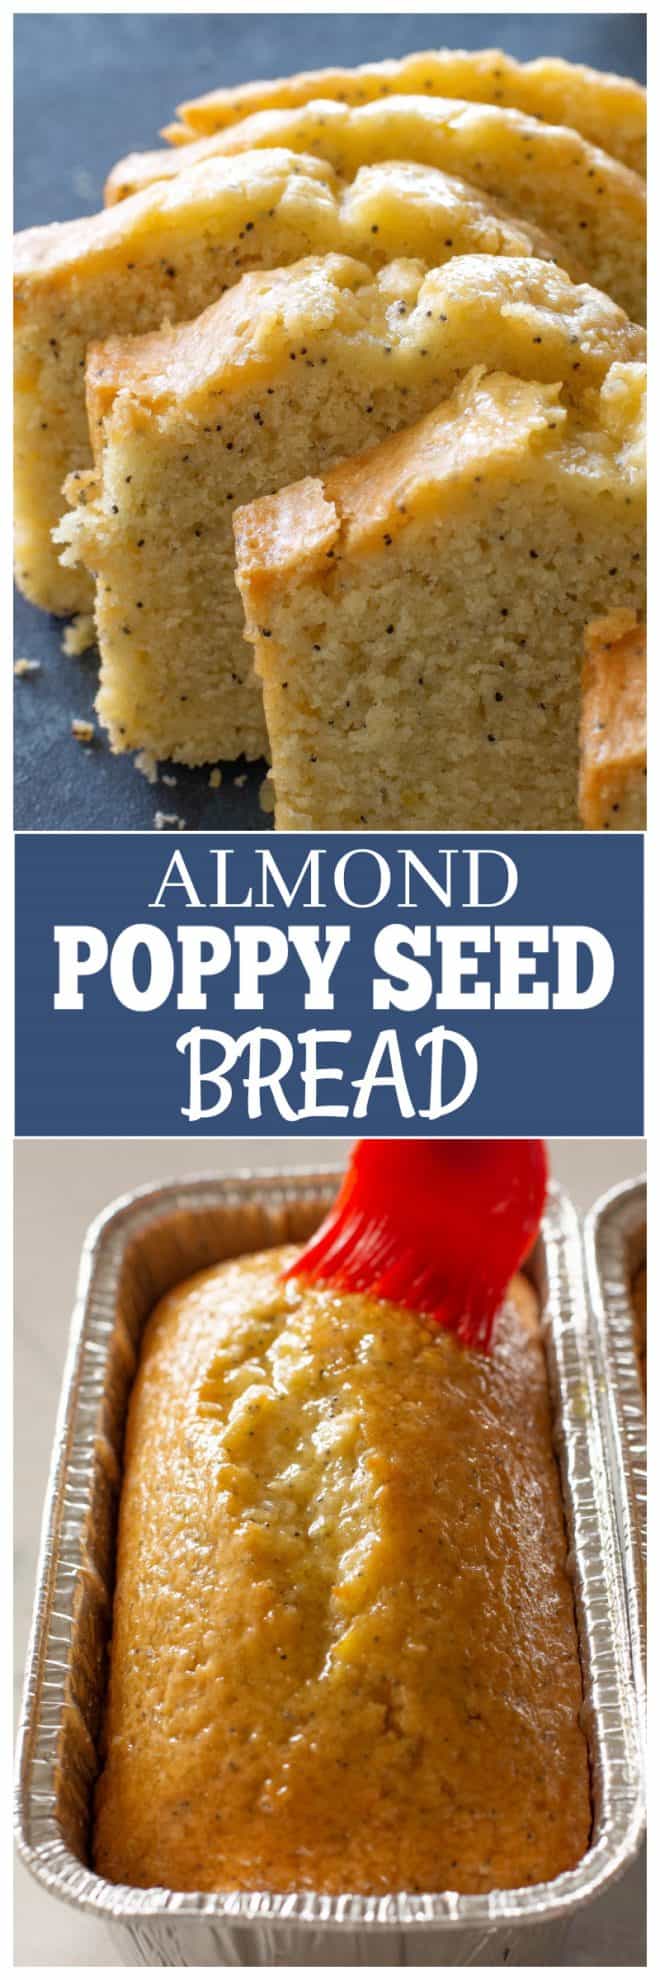 poppy seed bread